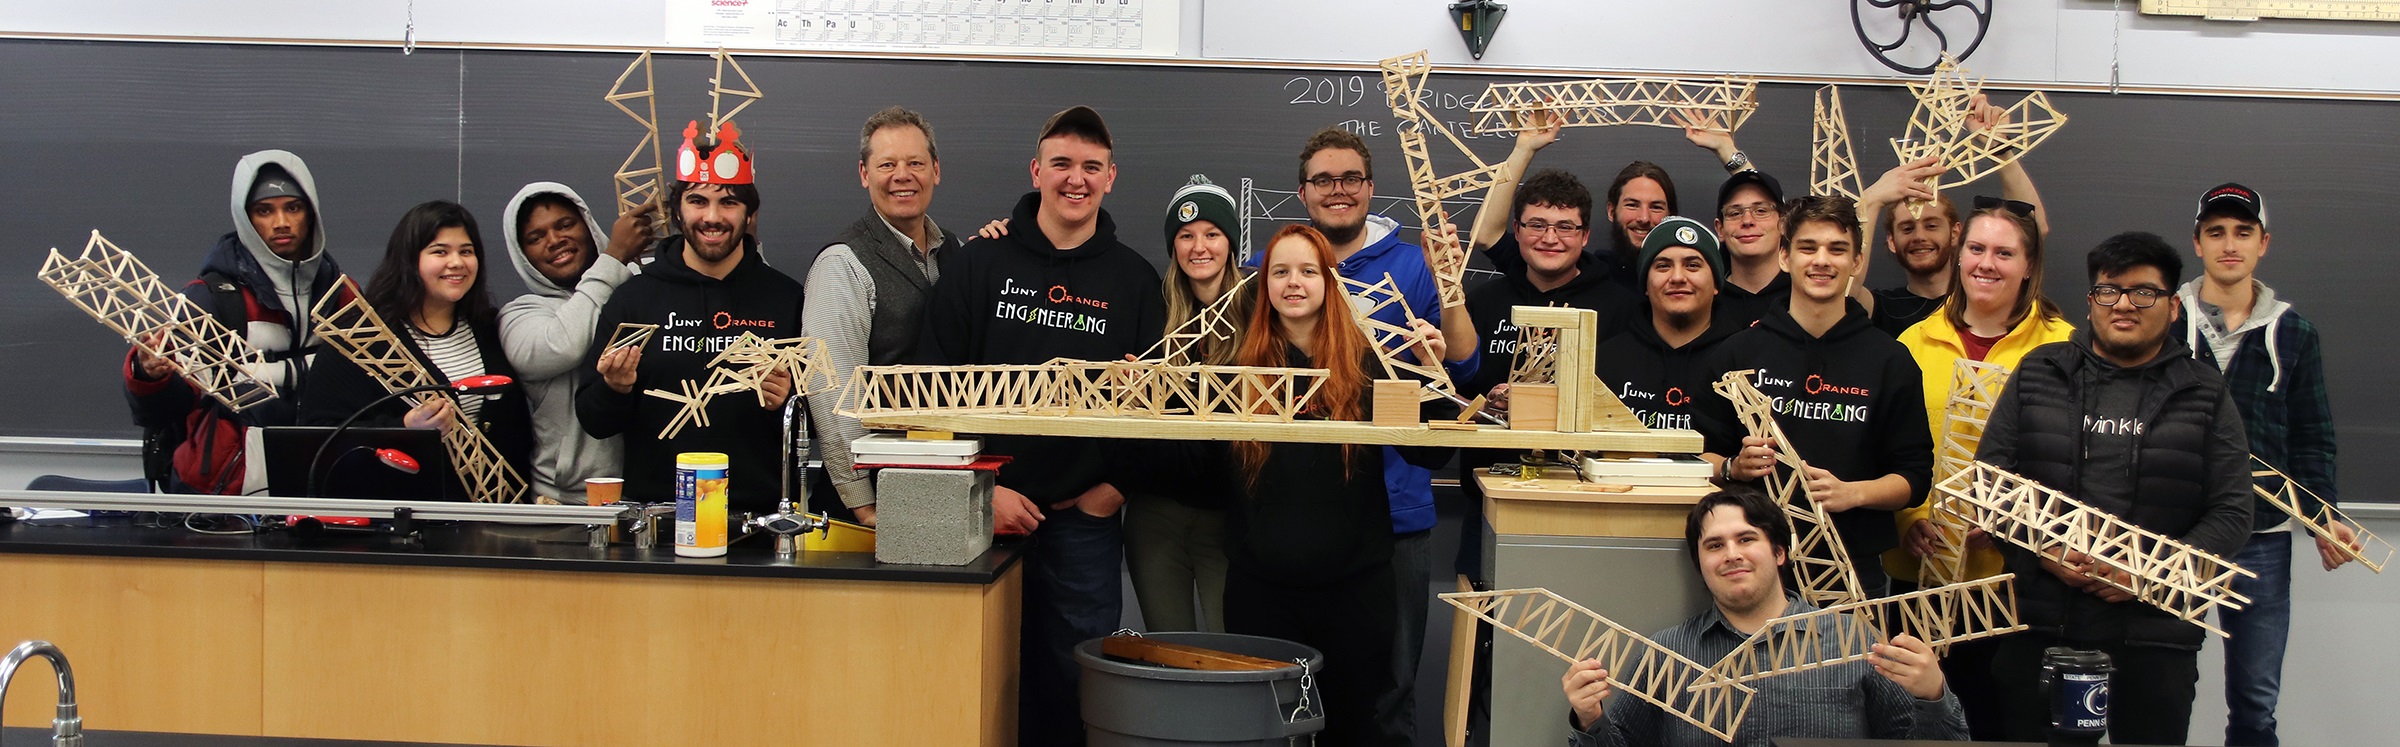 engineering bridge group